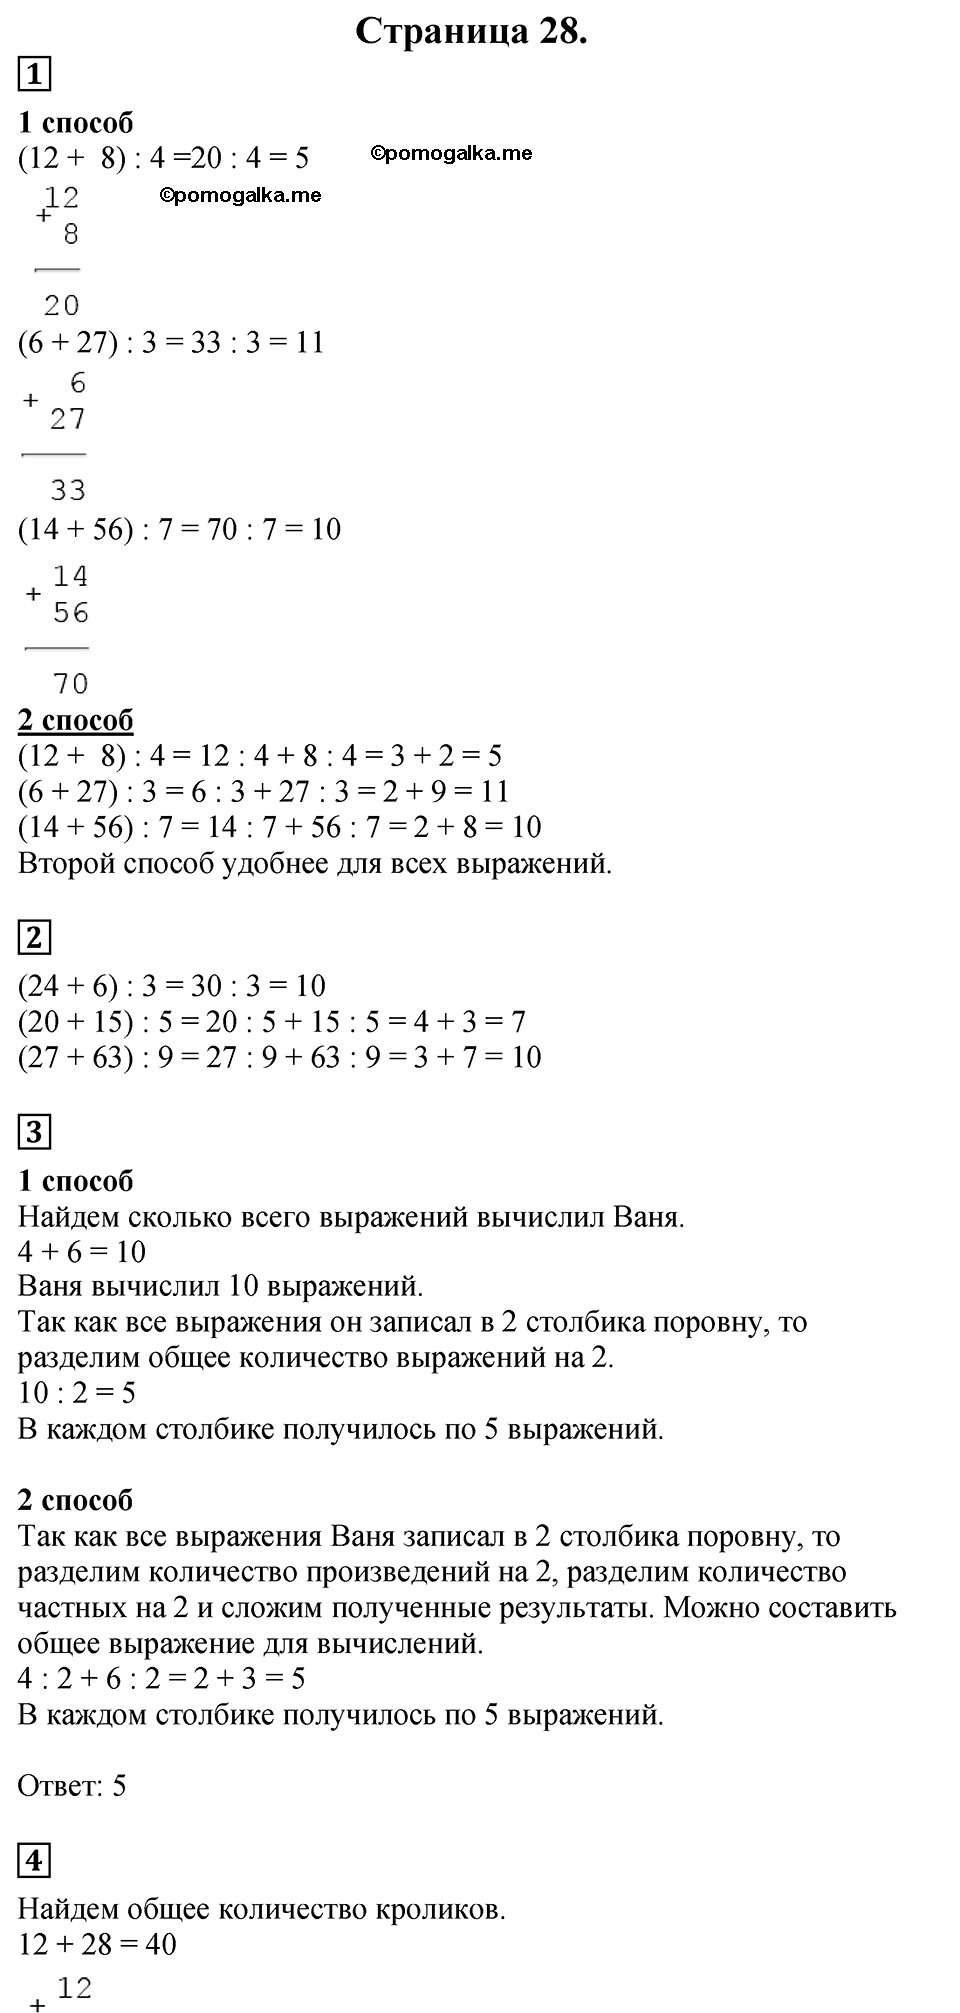 Страница №28 Часть 2 математика 3 класс Дорофеев